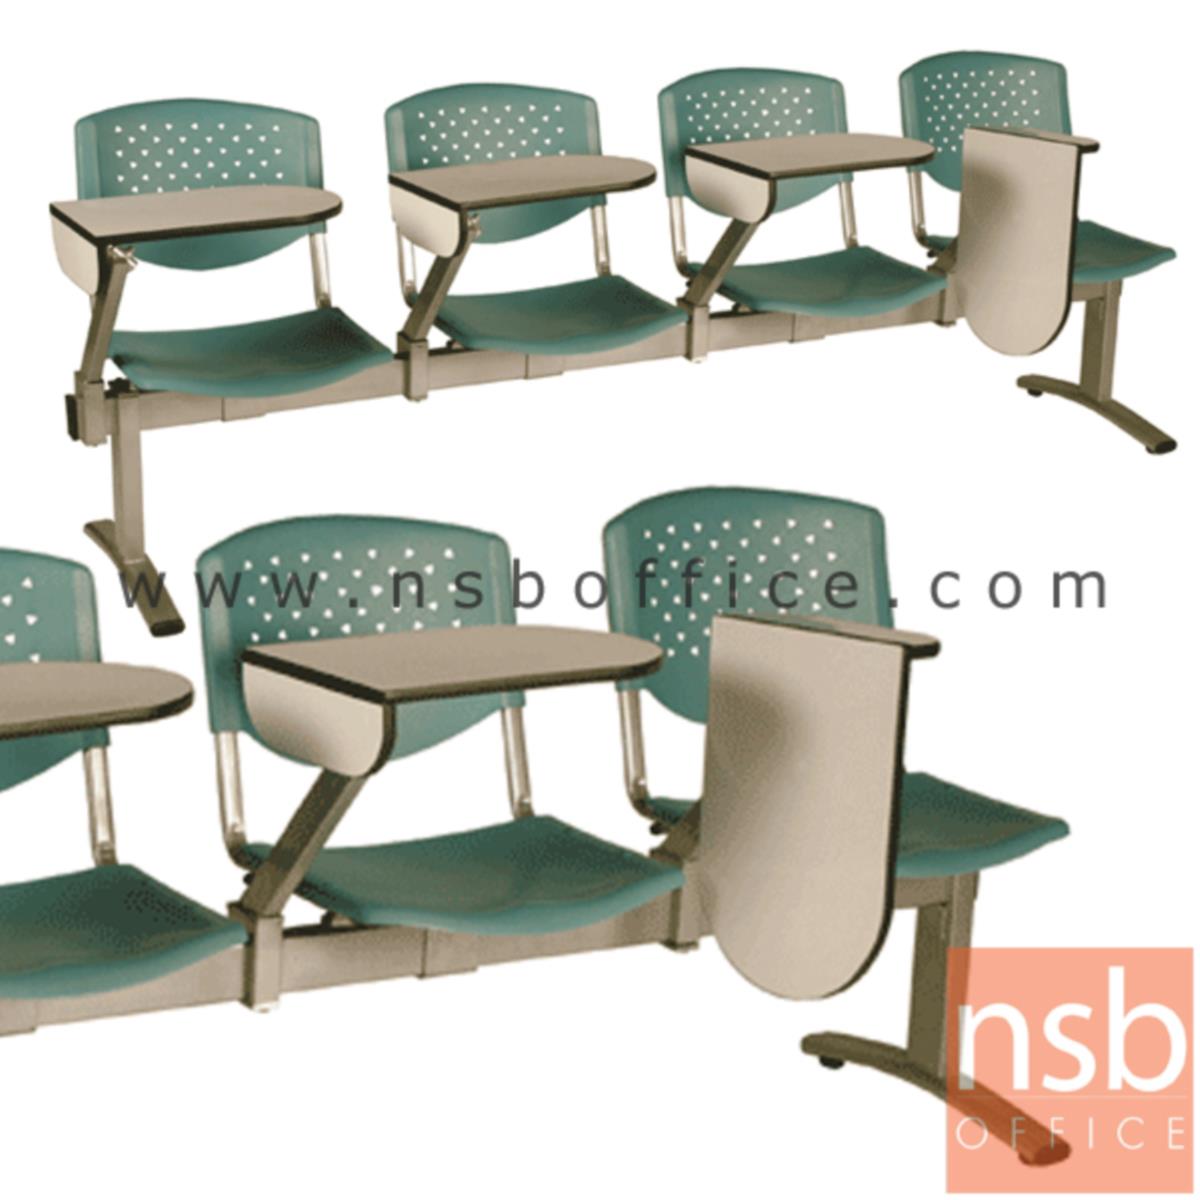 B17A020:เก้าอี้เลคเชอร์แถวเฟรมโพลี่ รุ่น D246 2 ,3 และ 4 ที่นั่ง ขาเหล็กพ่นสีเทา